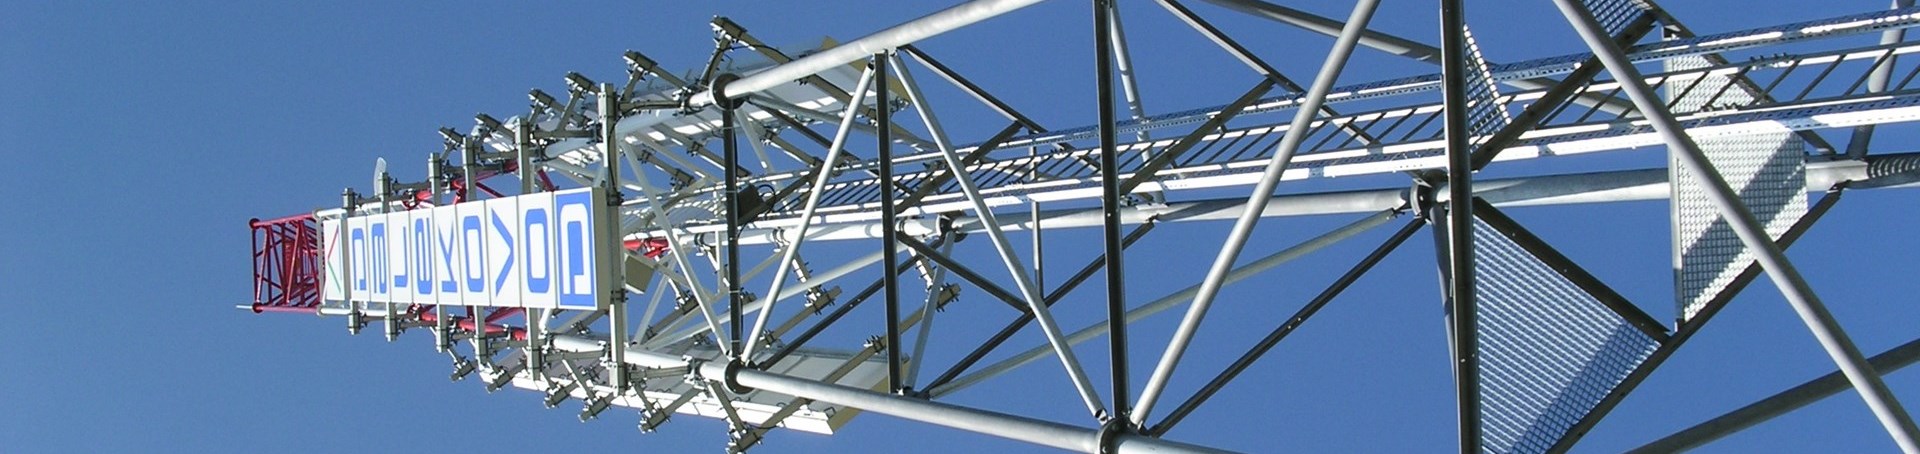 Antenna Pylons